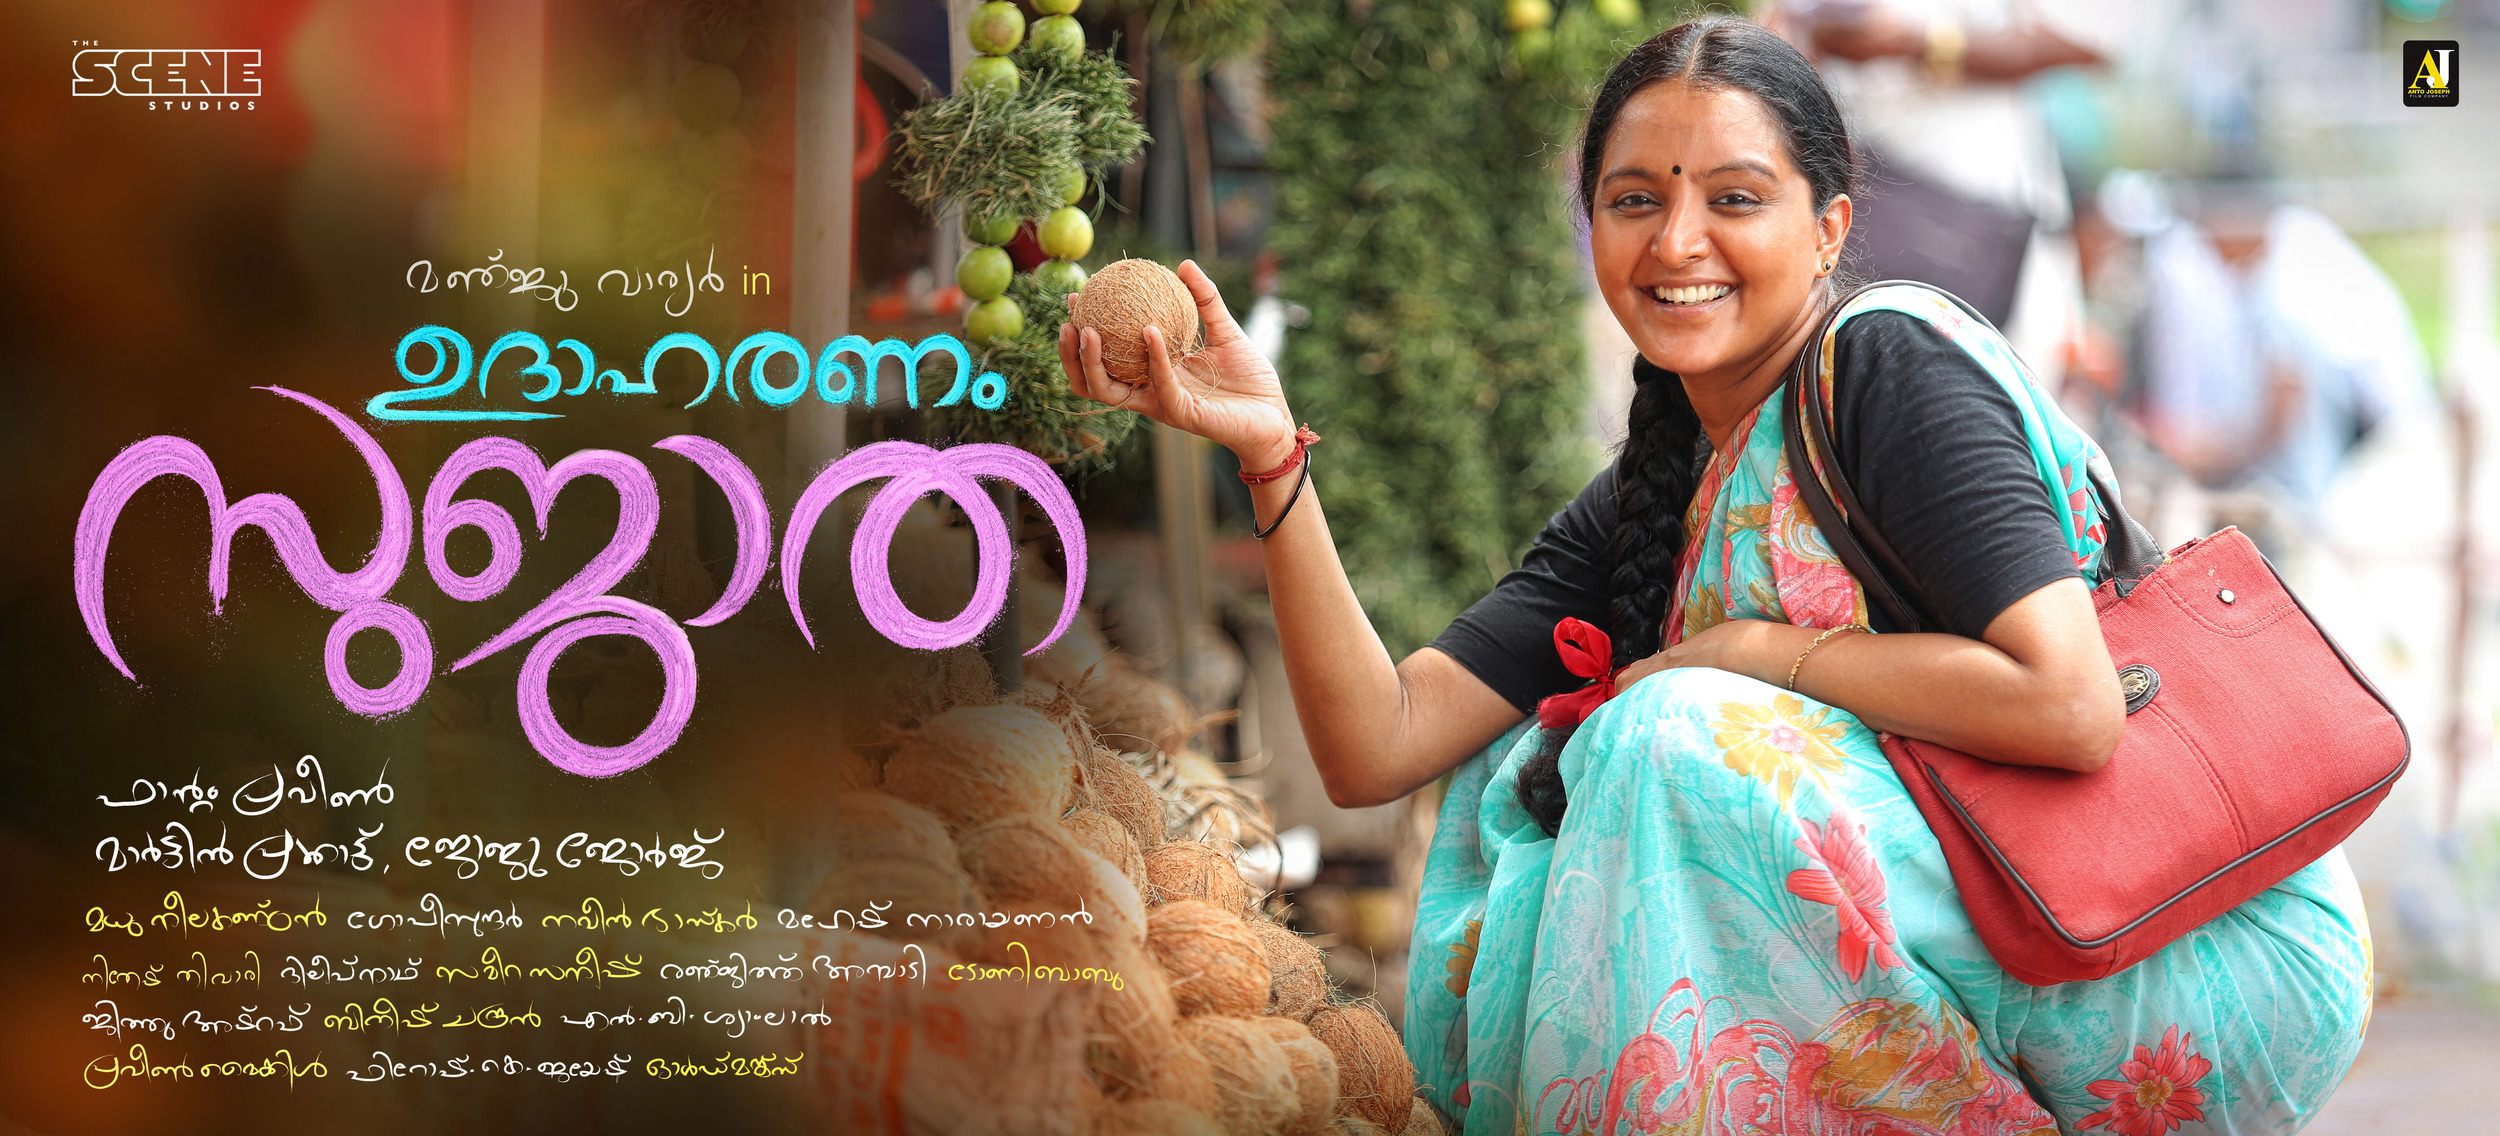 Mega Sized Movie Poster Image for Udhaharanam Sujatha (#2 of 5)